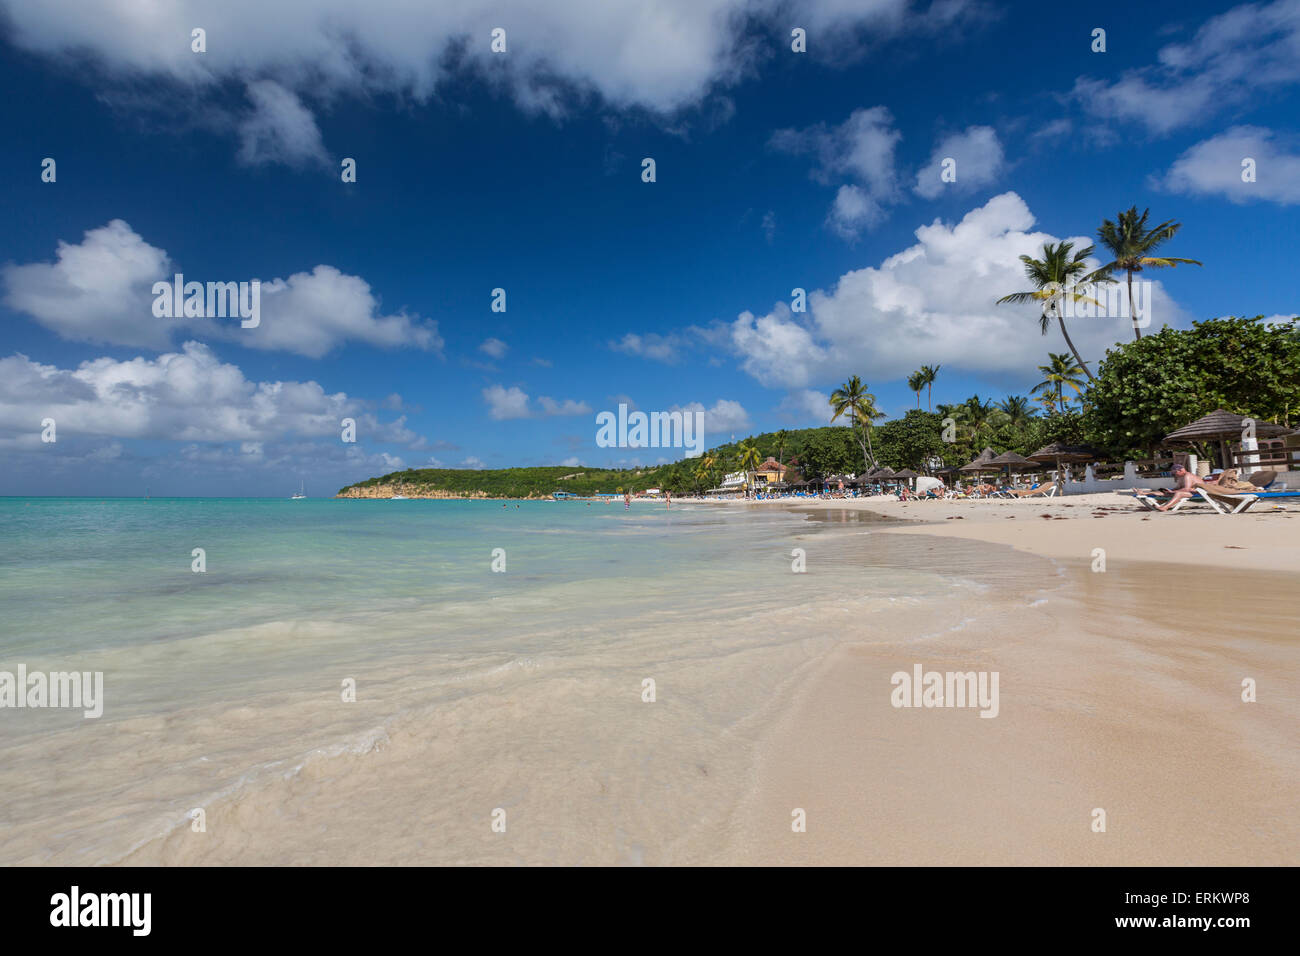 Dickinson Bay surplombant la mer des Caraïbes, Antigua, Iles sous le vent, Antilles, Caraïbes, Amérique Centrale Banque D'Images